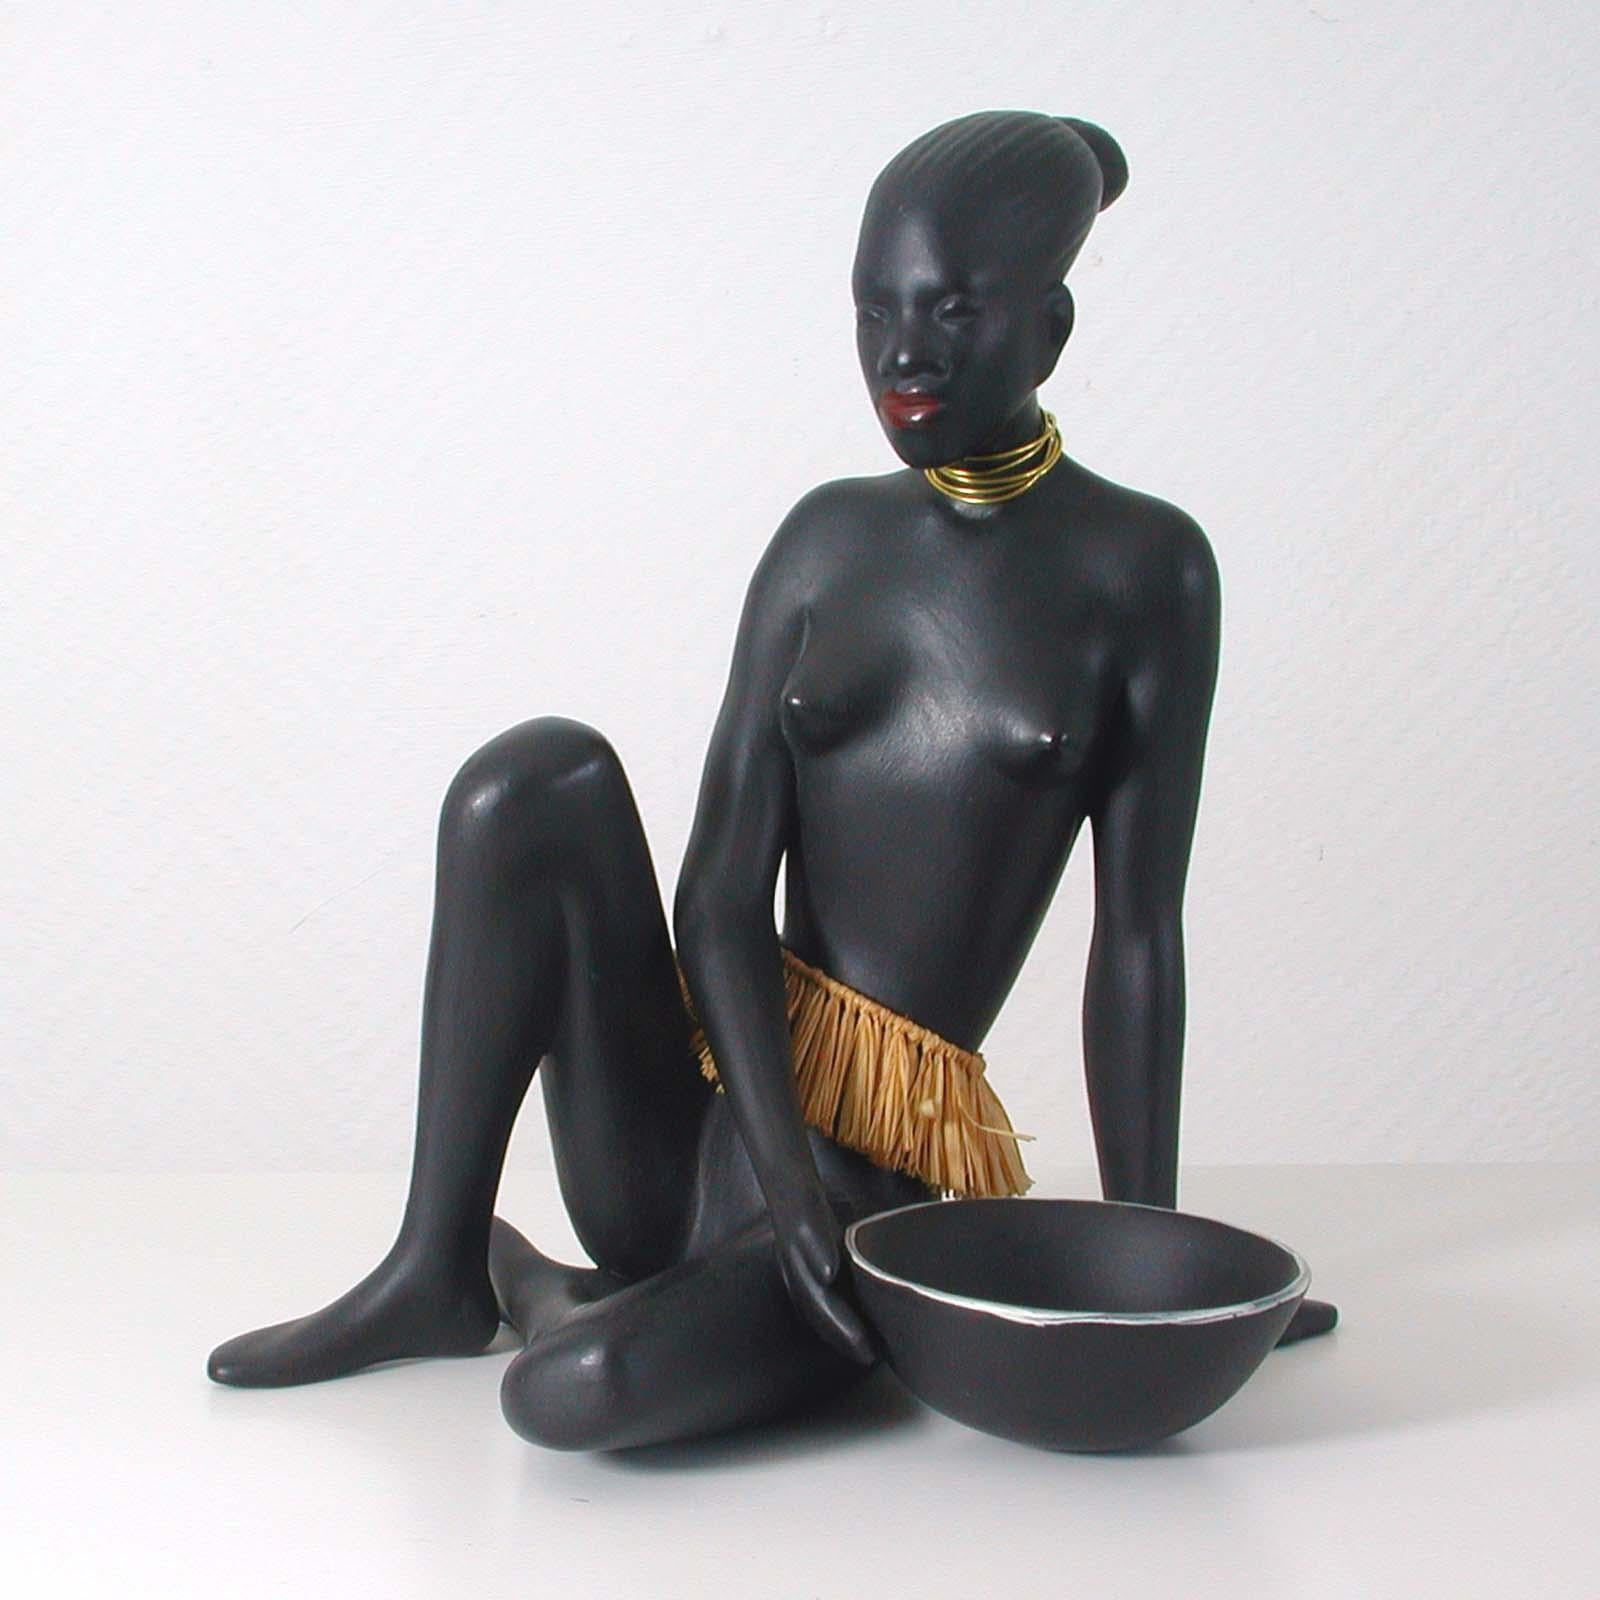 Diese schöne Skulptur wurde in den 1950er Jahren in Deutschland von der Porzellanfabrik Cortendorf Julius Griesbach in Coburg entworfen und hergestellt. Designer war Albert Strunz. Modell Nr. 2512.

Es zeigt eine nackte afrikanische Ureinwohnerin